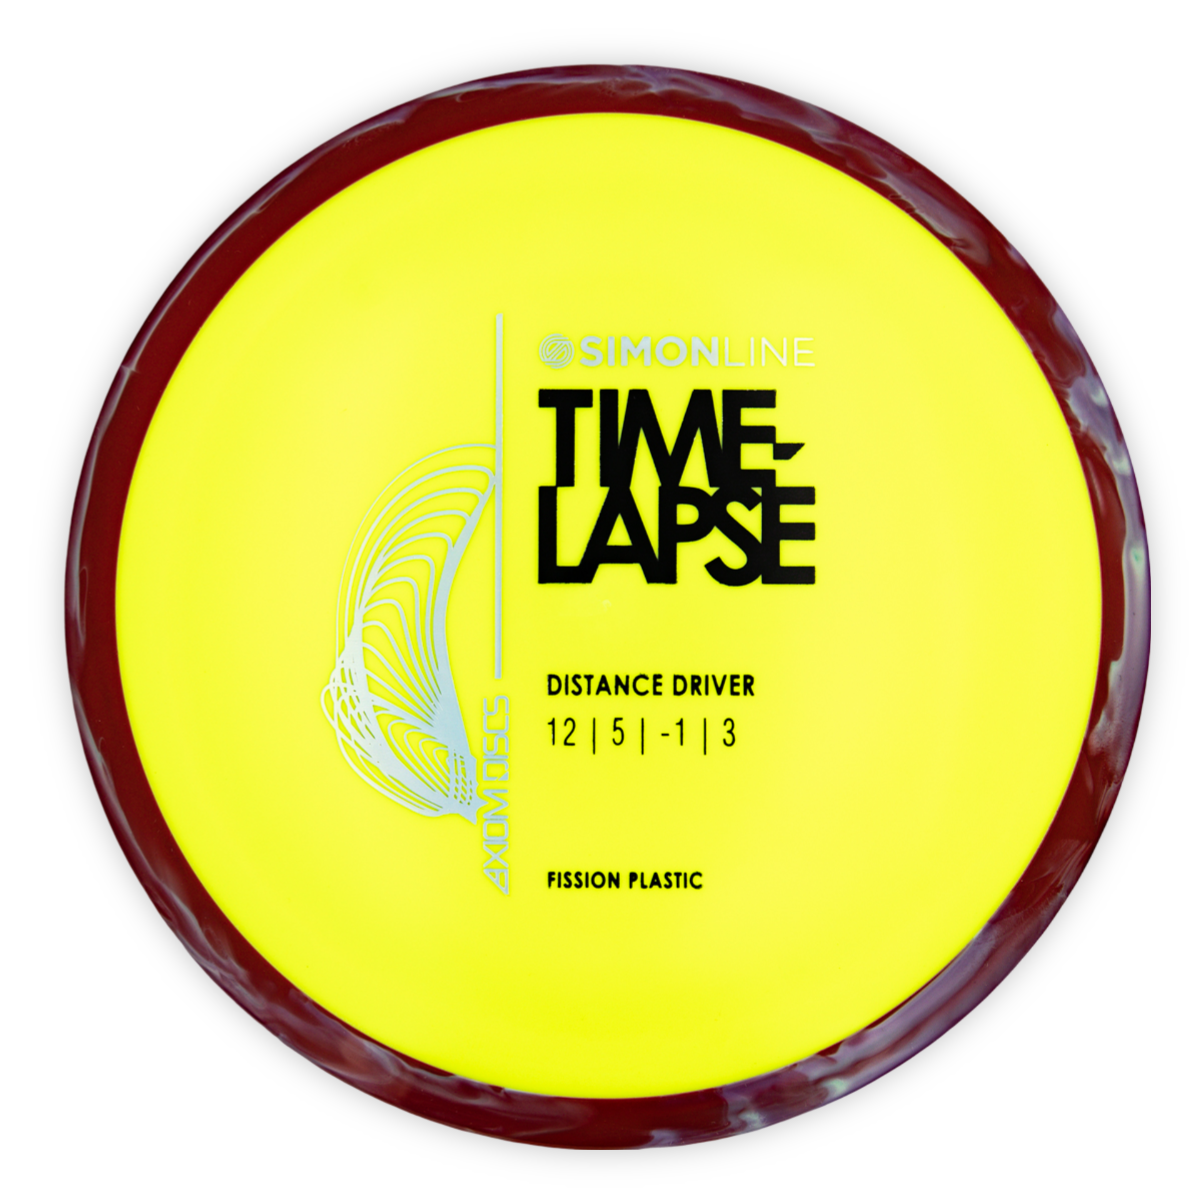 Axiom Simon Line Time-Lapse